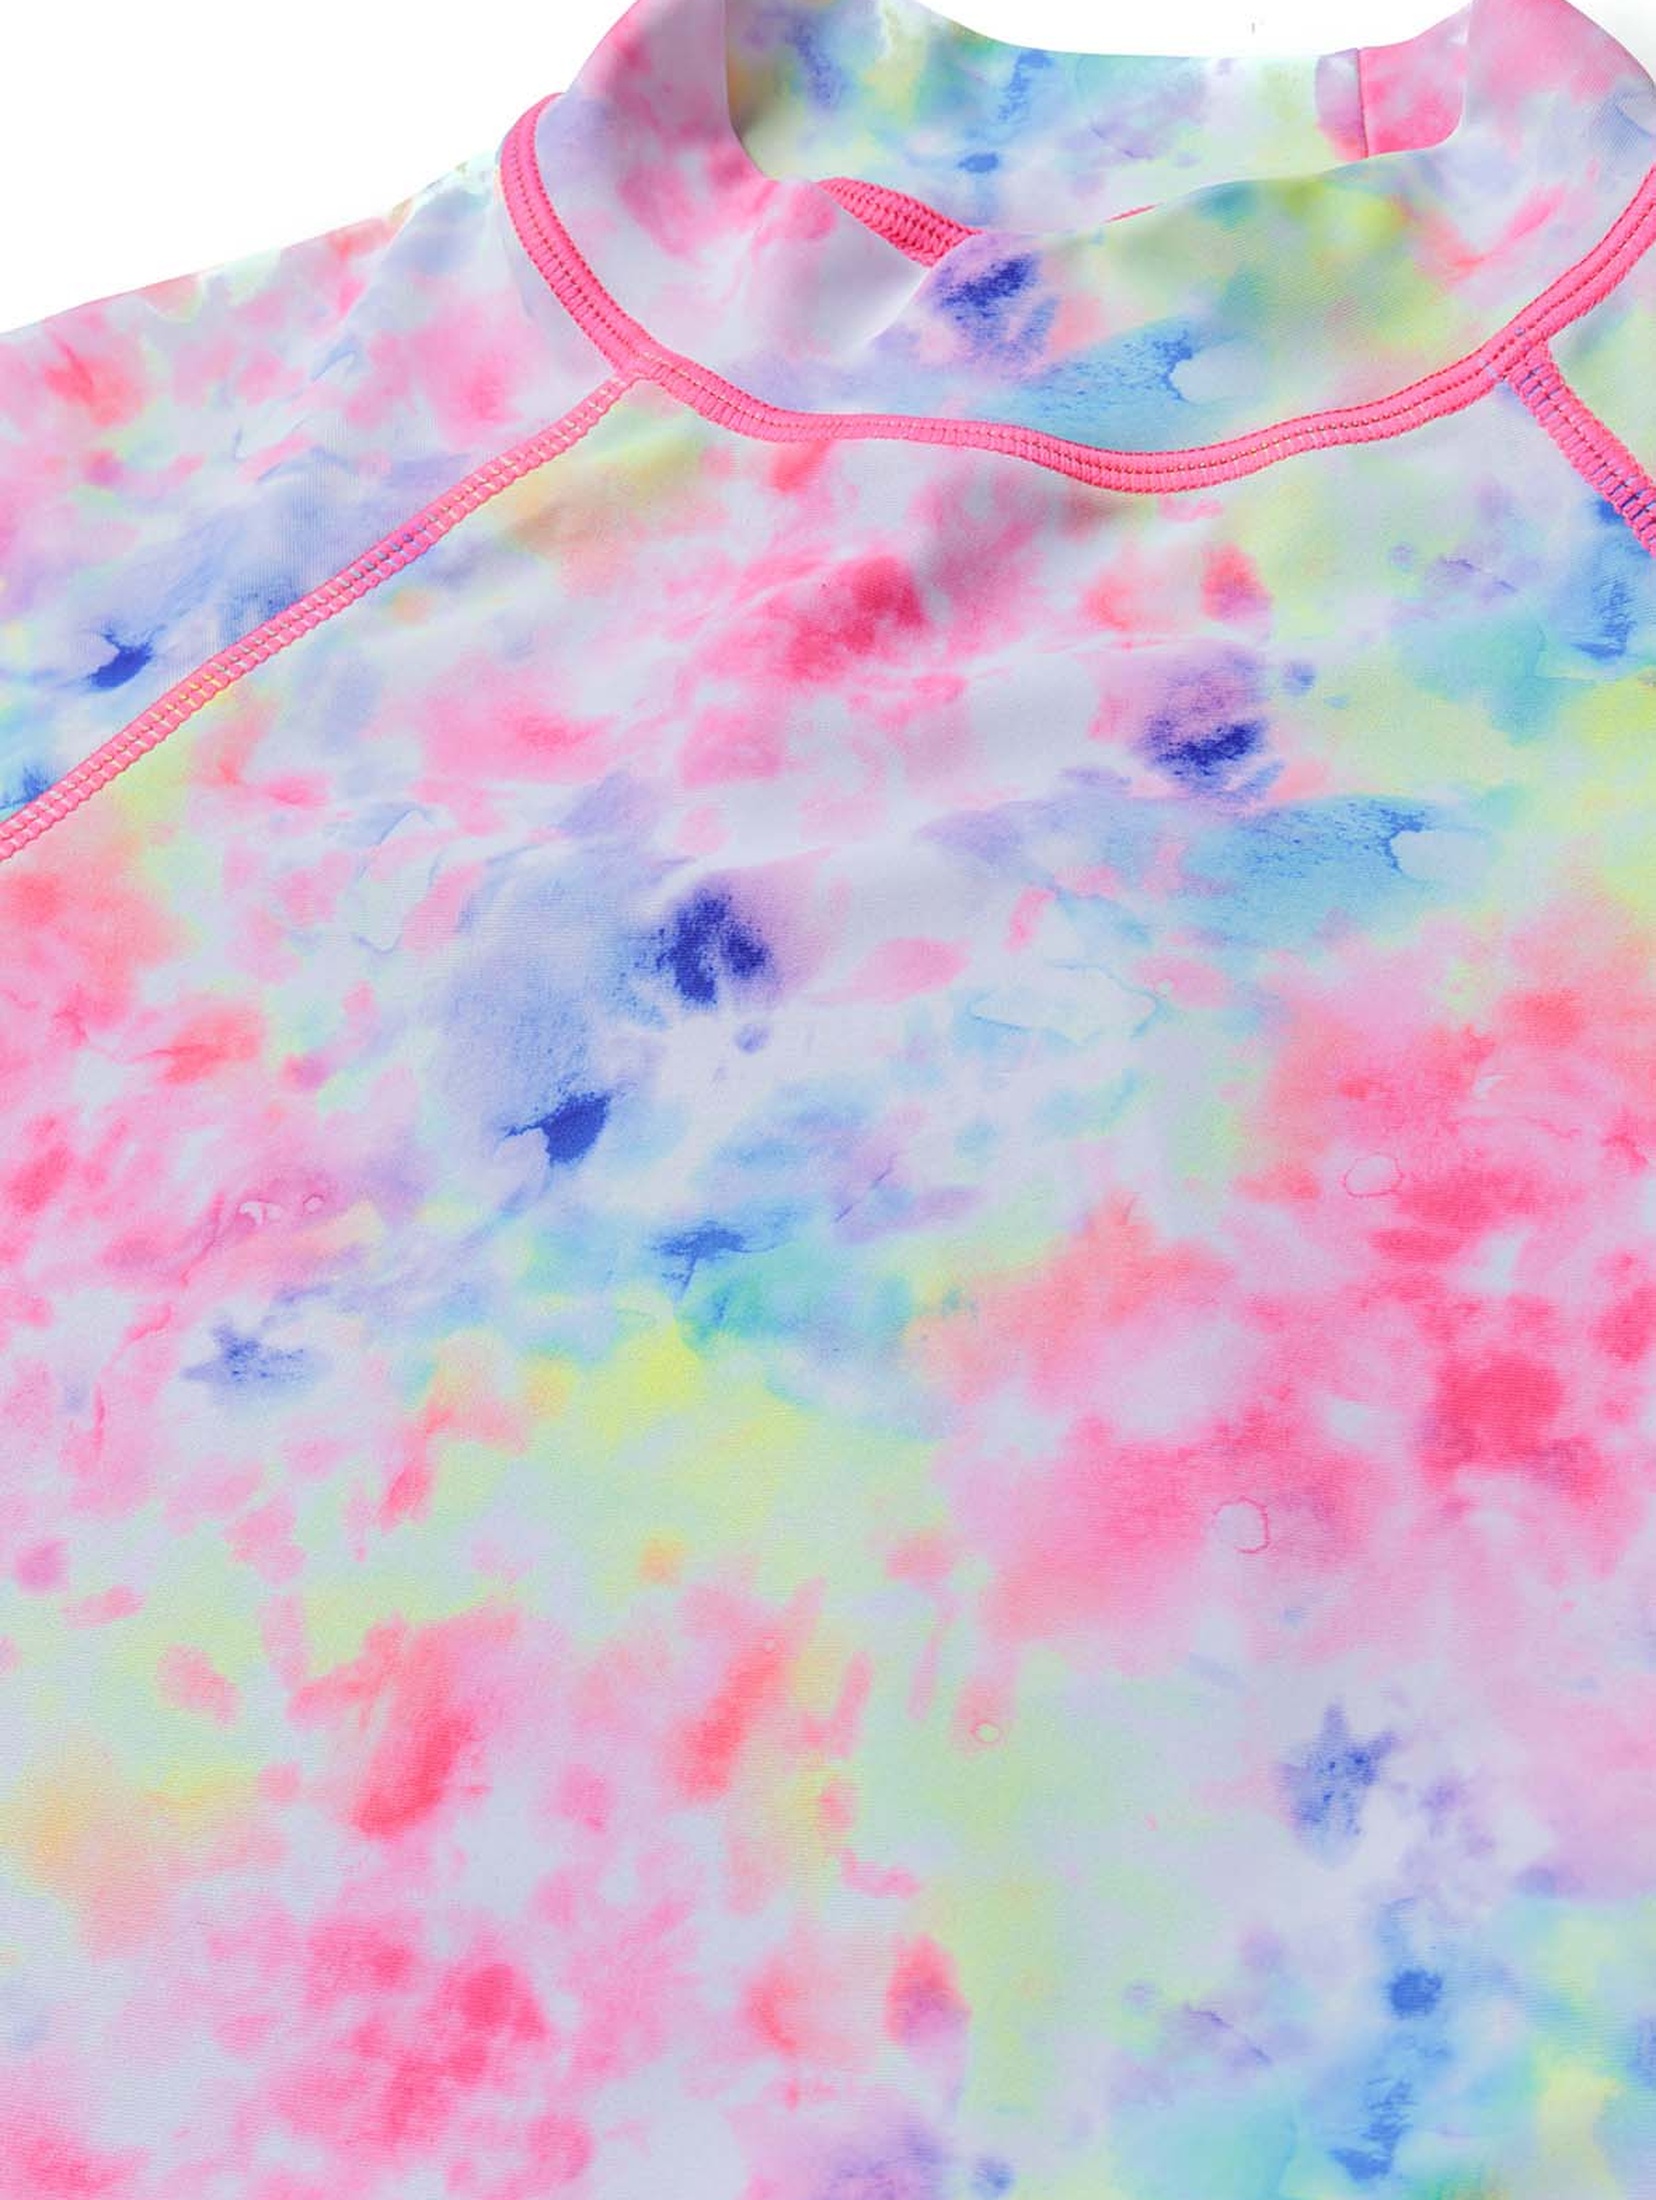 Strój kąpielowy dziewczęcy- koszulka i majtki z filtrem UV